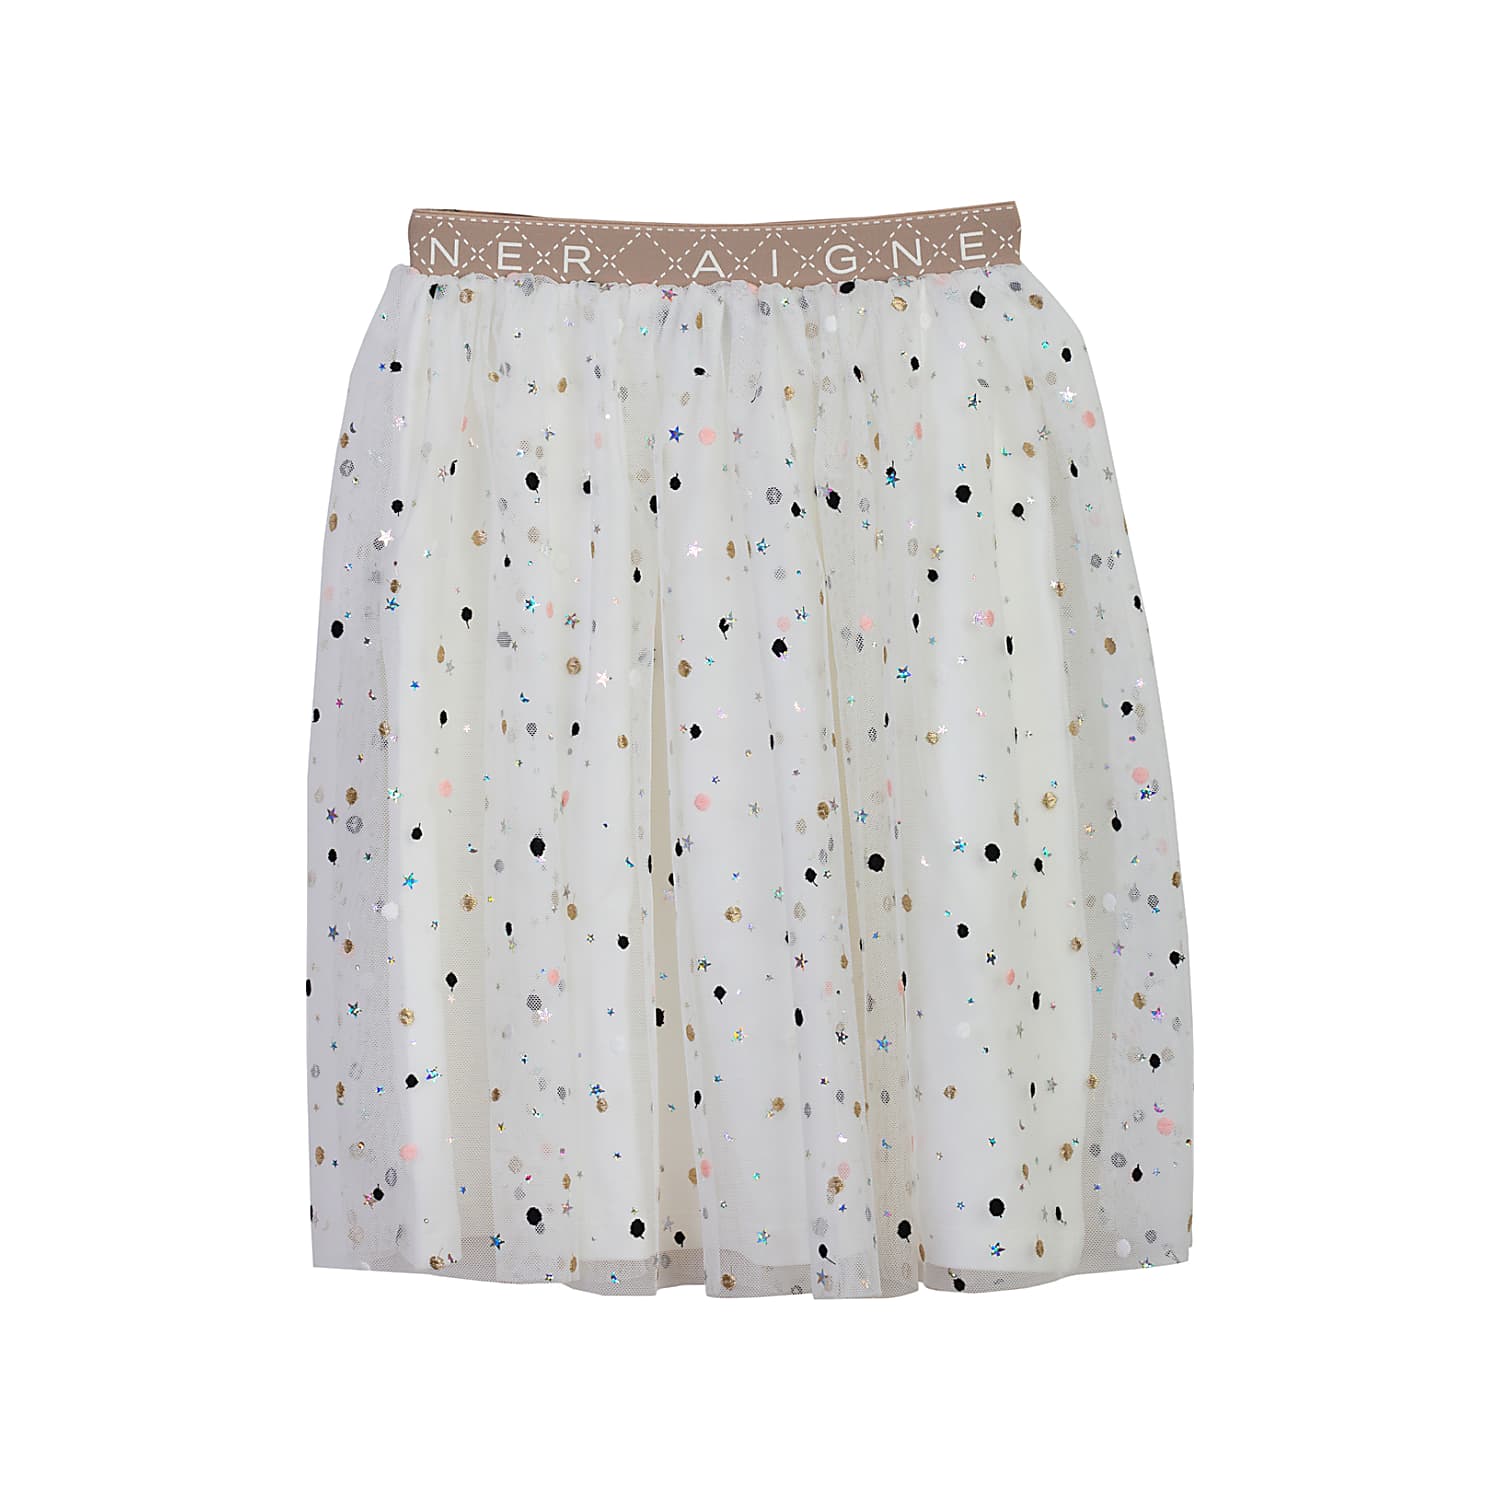 Girls skirt made of tulle